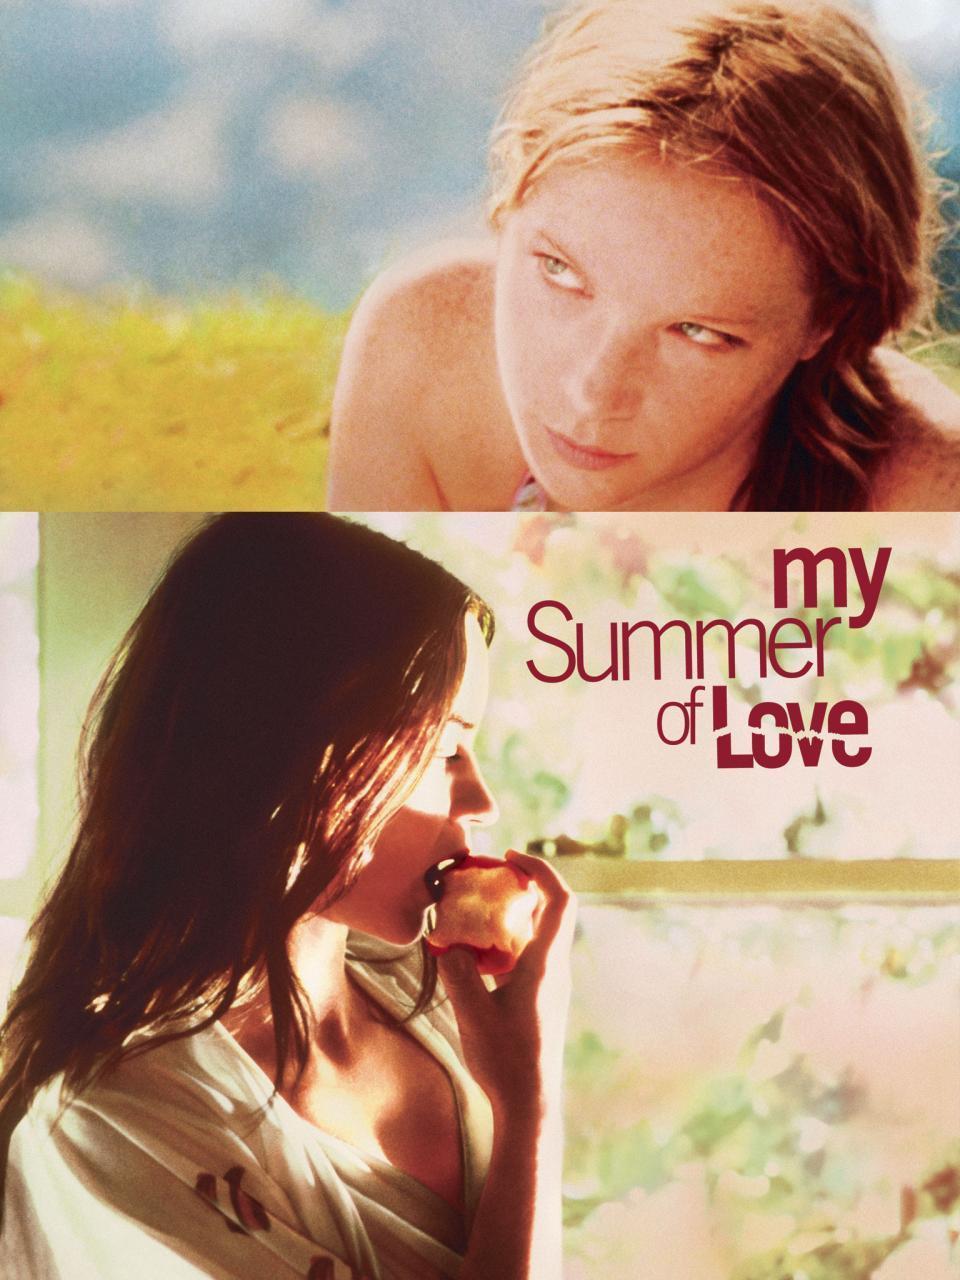 Plakat von "My Summer of Love"